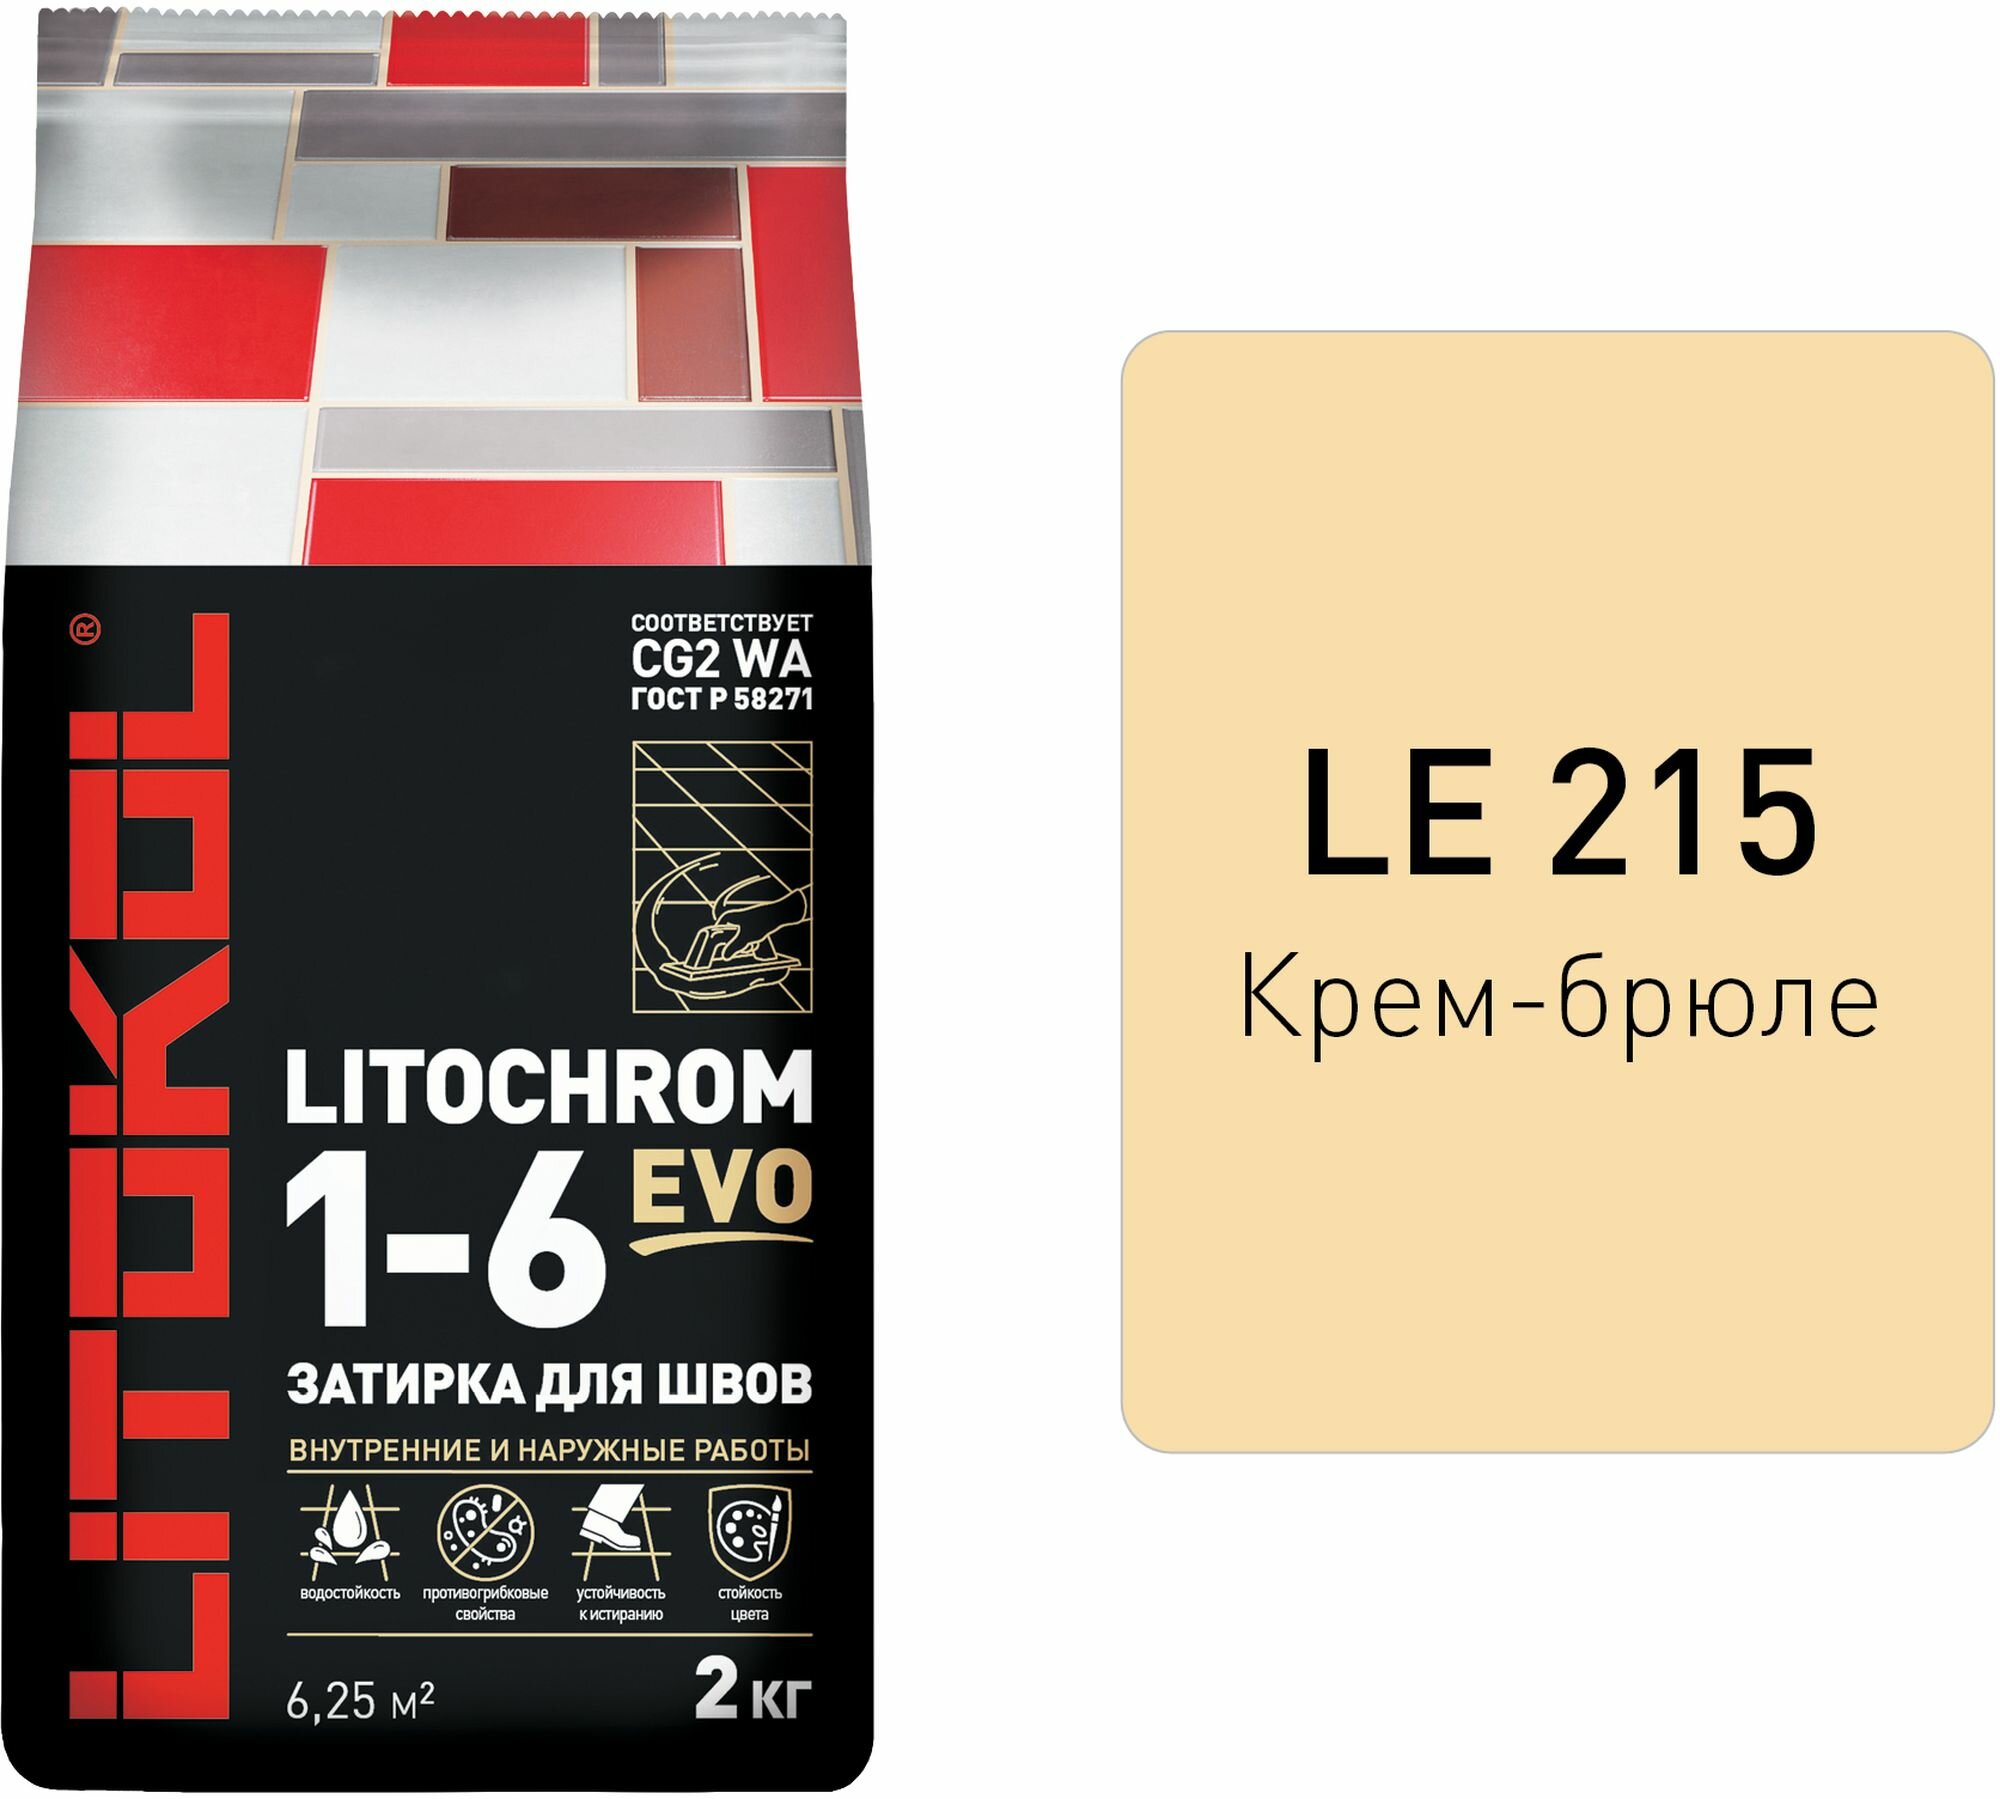 Затирка цементная LITOKOL LITOCHROM 1-6 EVO цвет LE 215 крем брюле 2 кг